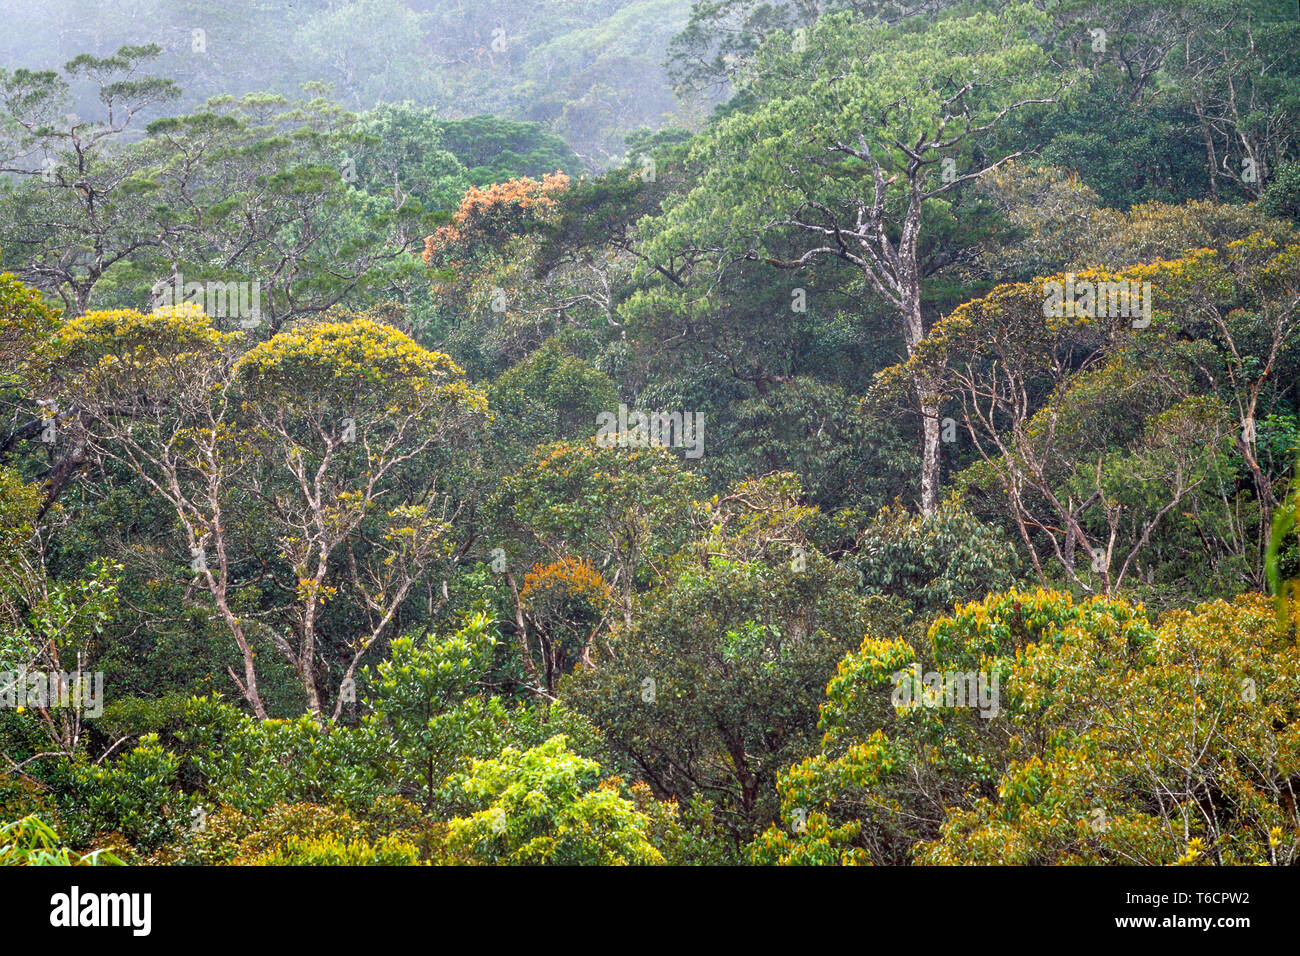 La végétation de forêt tropicale, Sarawak, Malaisie Orientale Banque D'Images